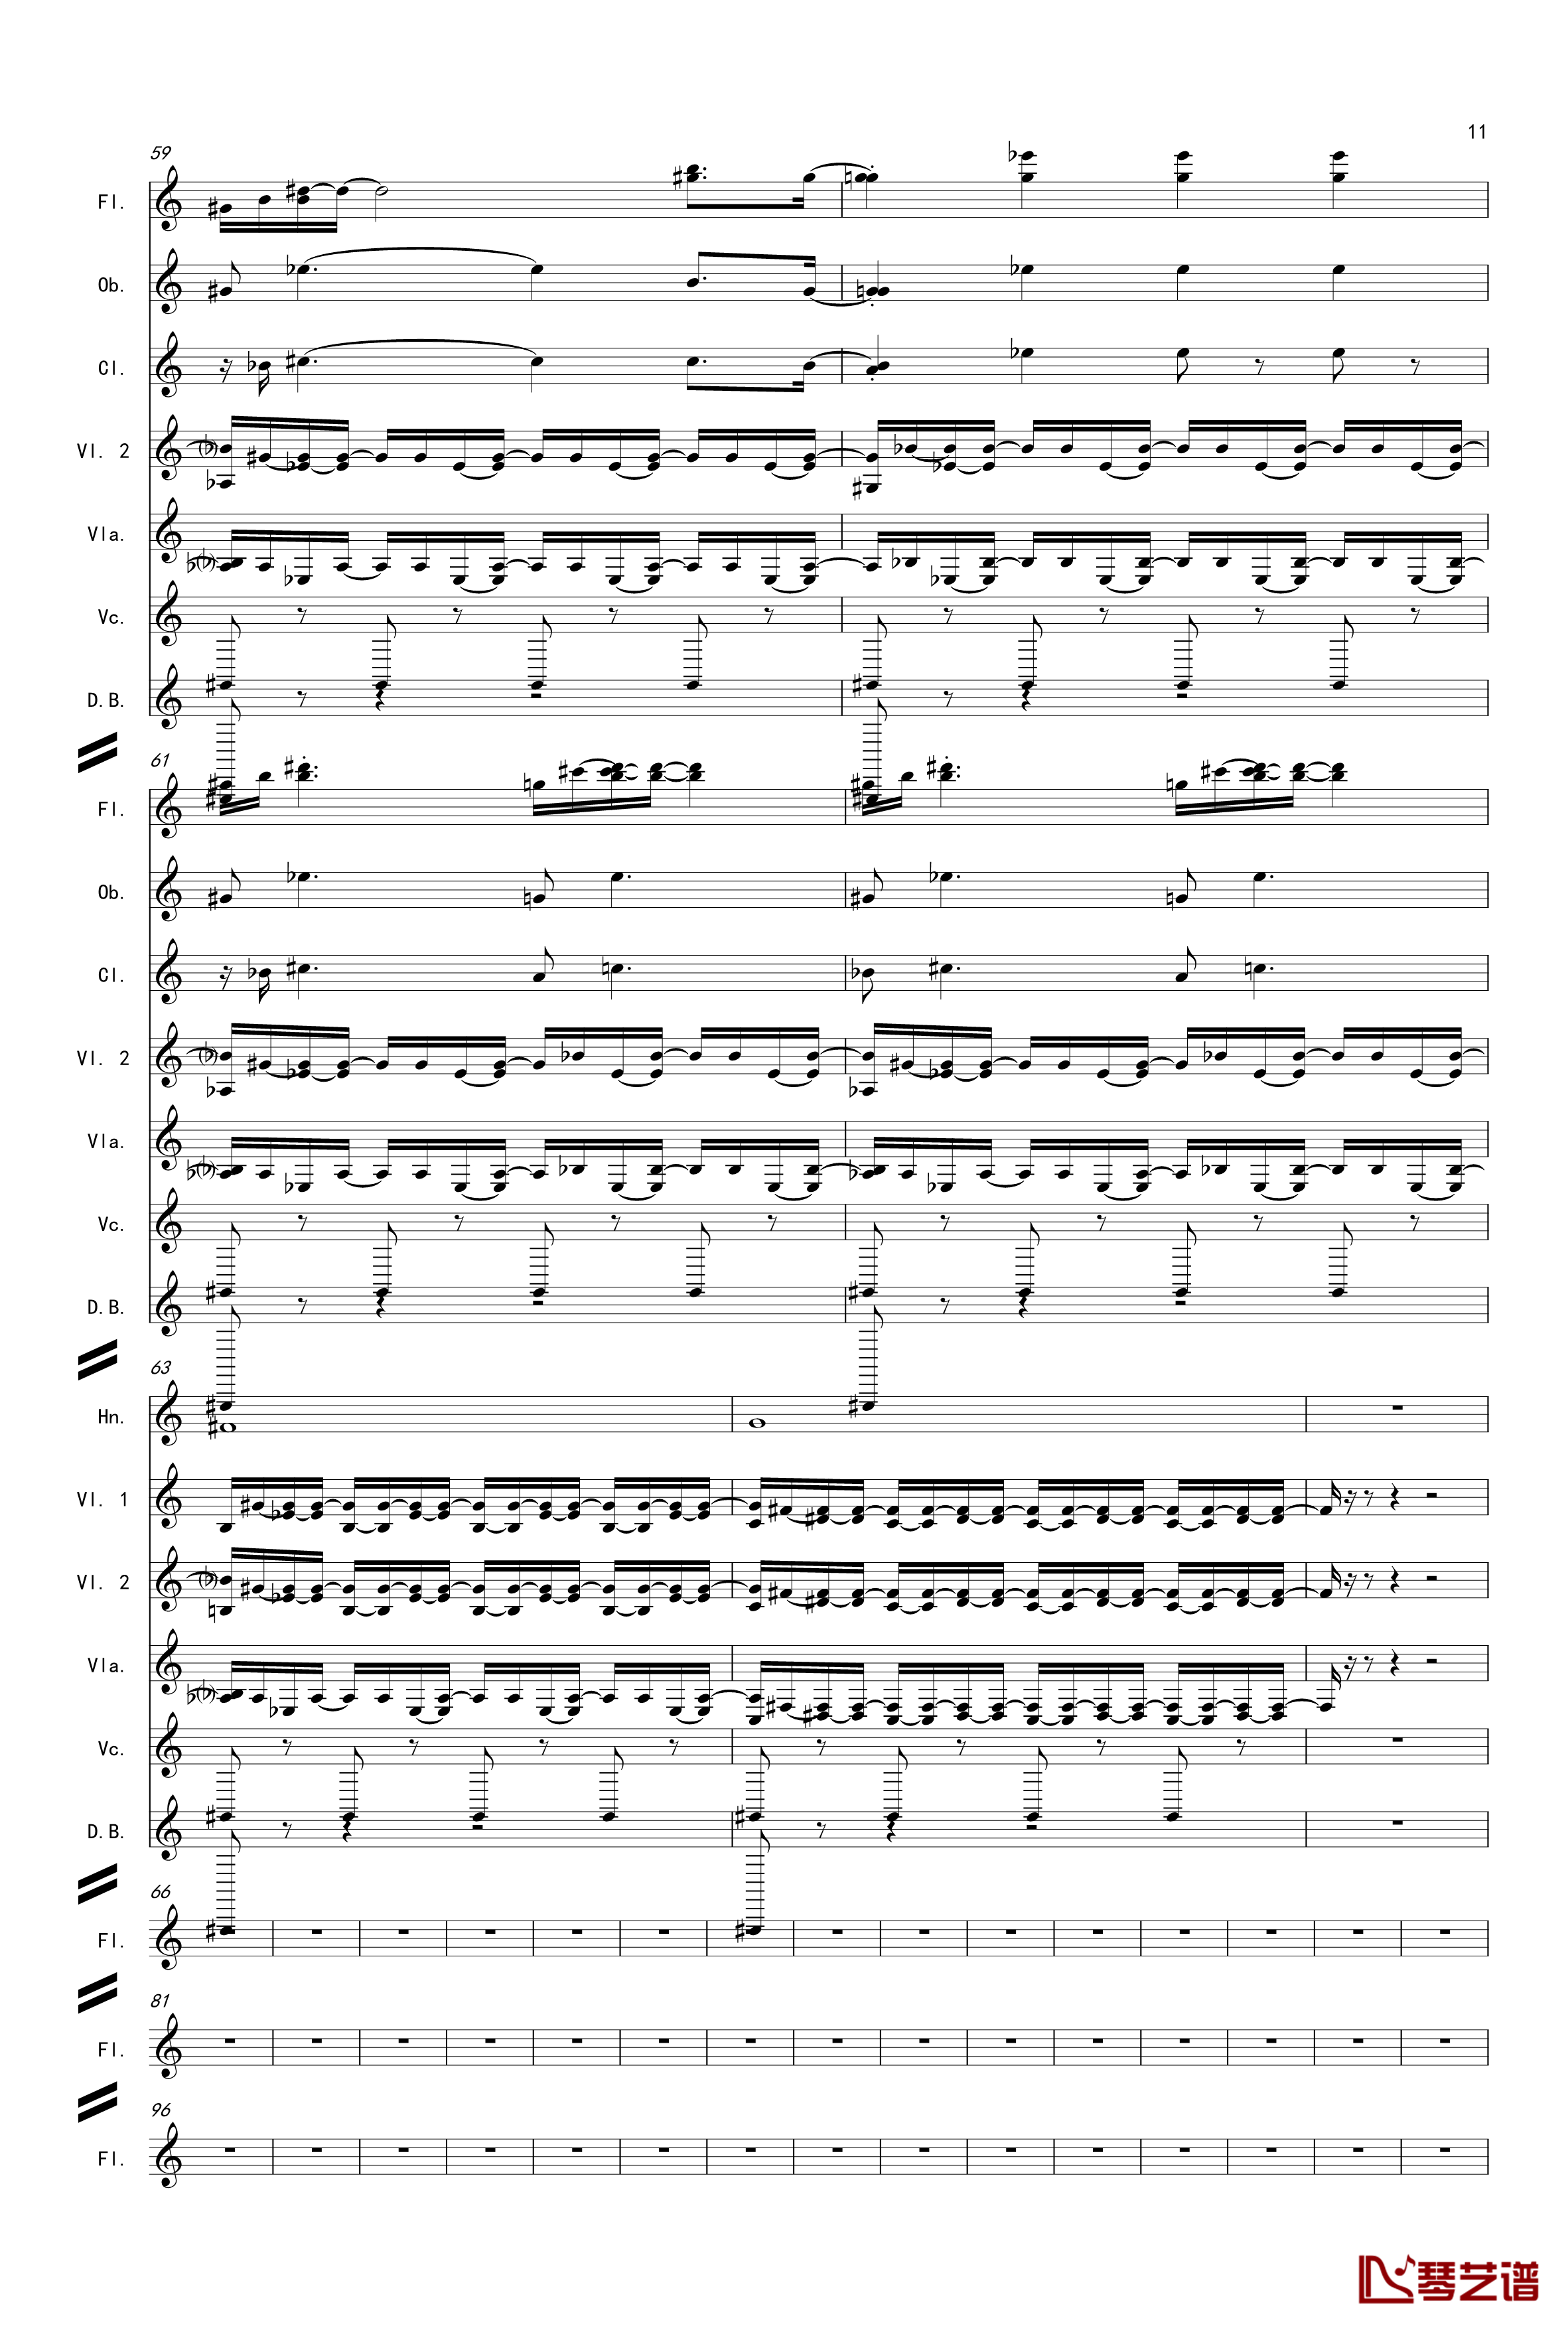 奏鸣曲之交响第14首Ⅲ钢琴谱-贝多芬-beethoven11